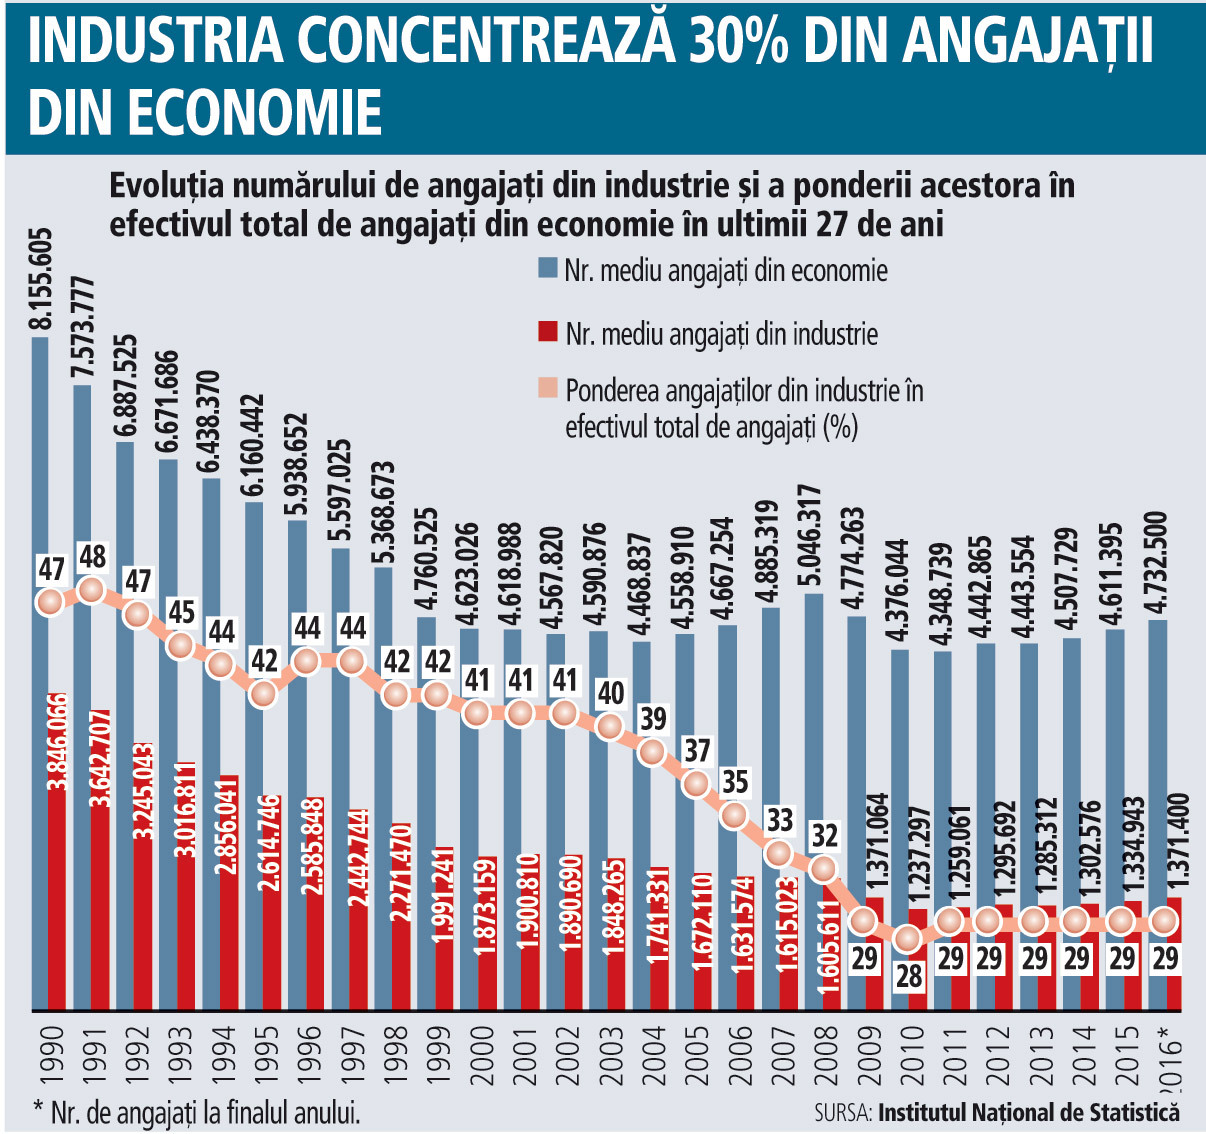 Reindustrializarea României - cât de fezabil mai este acest proiect? Industria mai are 30% din angajaţii din economie. În anii ’90 jumătate din forţa de muncă a României lucra în sectorul industrial